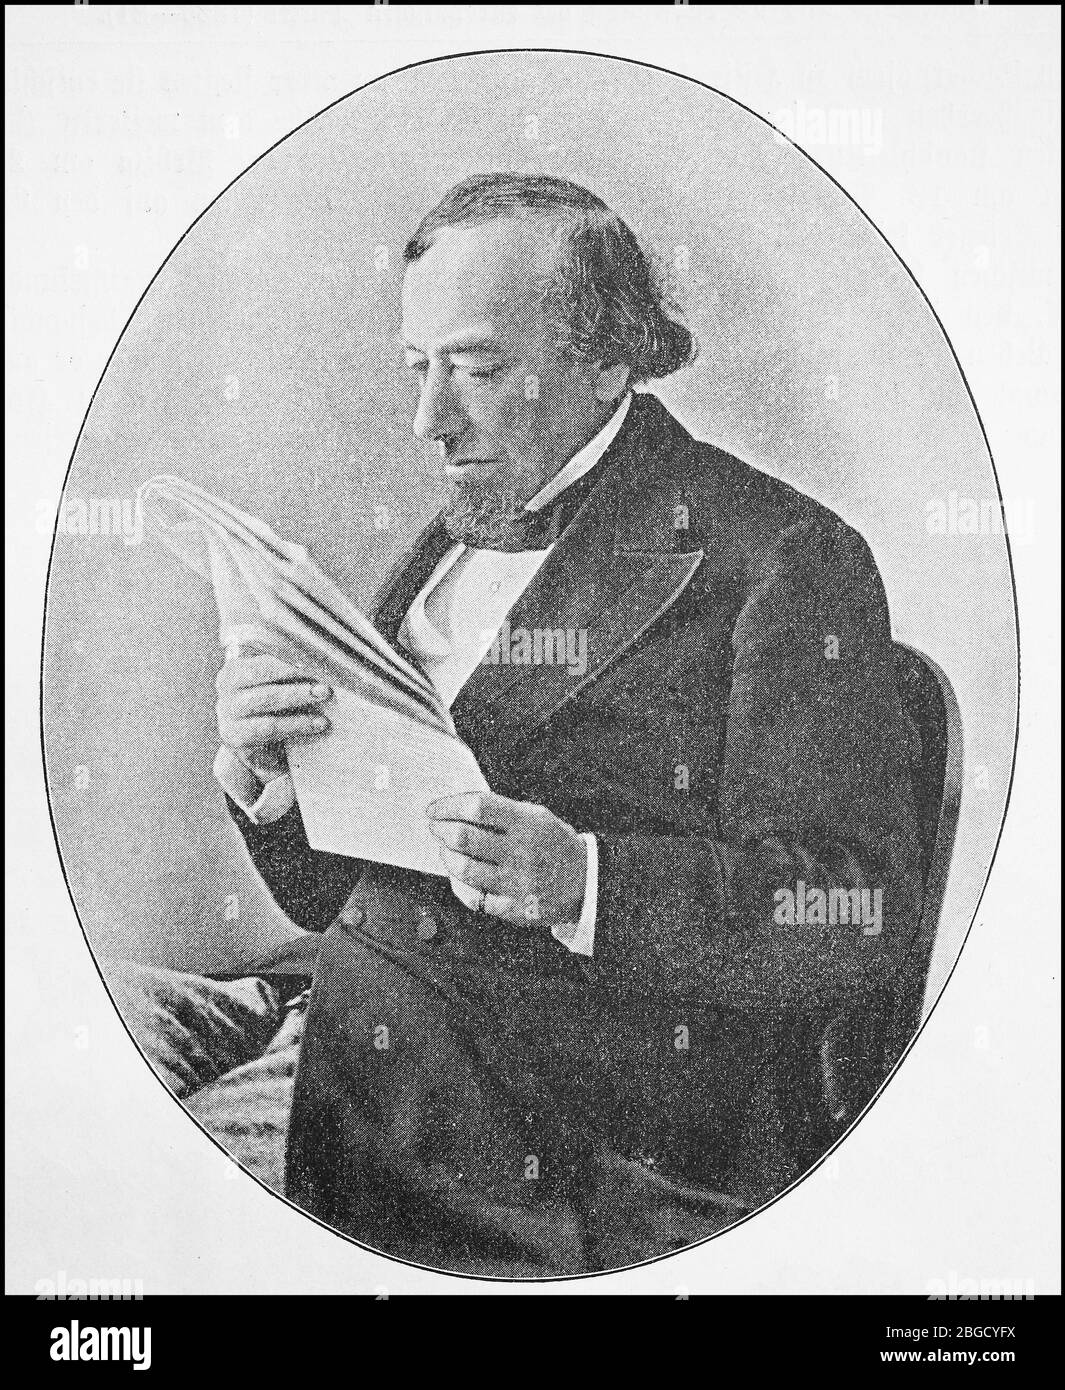 Benjamin Disraeli, 1. Earl of Beaconsfield, 21. Dezember 1804 - 19. April 1881, war ein konservativer britischer Staatsmann und erfolgreicher Schriftsteller. Zweimal, 1868 und von 1874 bis 1880, bekleidete er das Amt des britischen Premierministers / Benjamin Disraeli, 1. Earl of Beaconsfield, 21. Dezember 1804 - 19. April 1881, war ein konservativer britischer Staatsmann und erfolgreicher Romanschriftsteller. Zweimal, 1868 und von 1874 bis 1880, bekleidete er das Amt des britischen Premierministers, historisch, historisch, digital verbesserte Reproduktion eines Originals aus dem 19. Jahrhundert / digitale Produktion ei Stockfoto